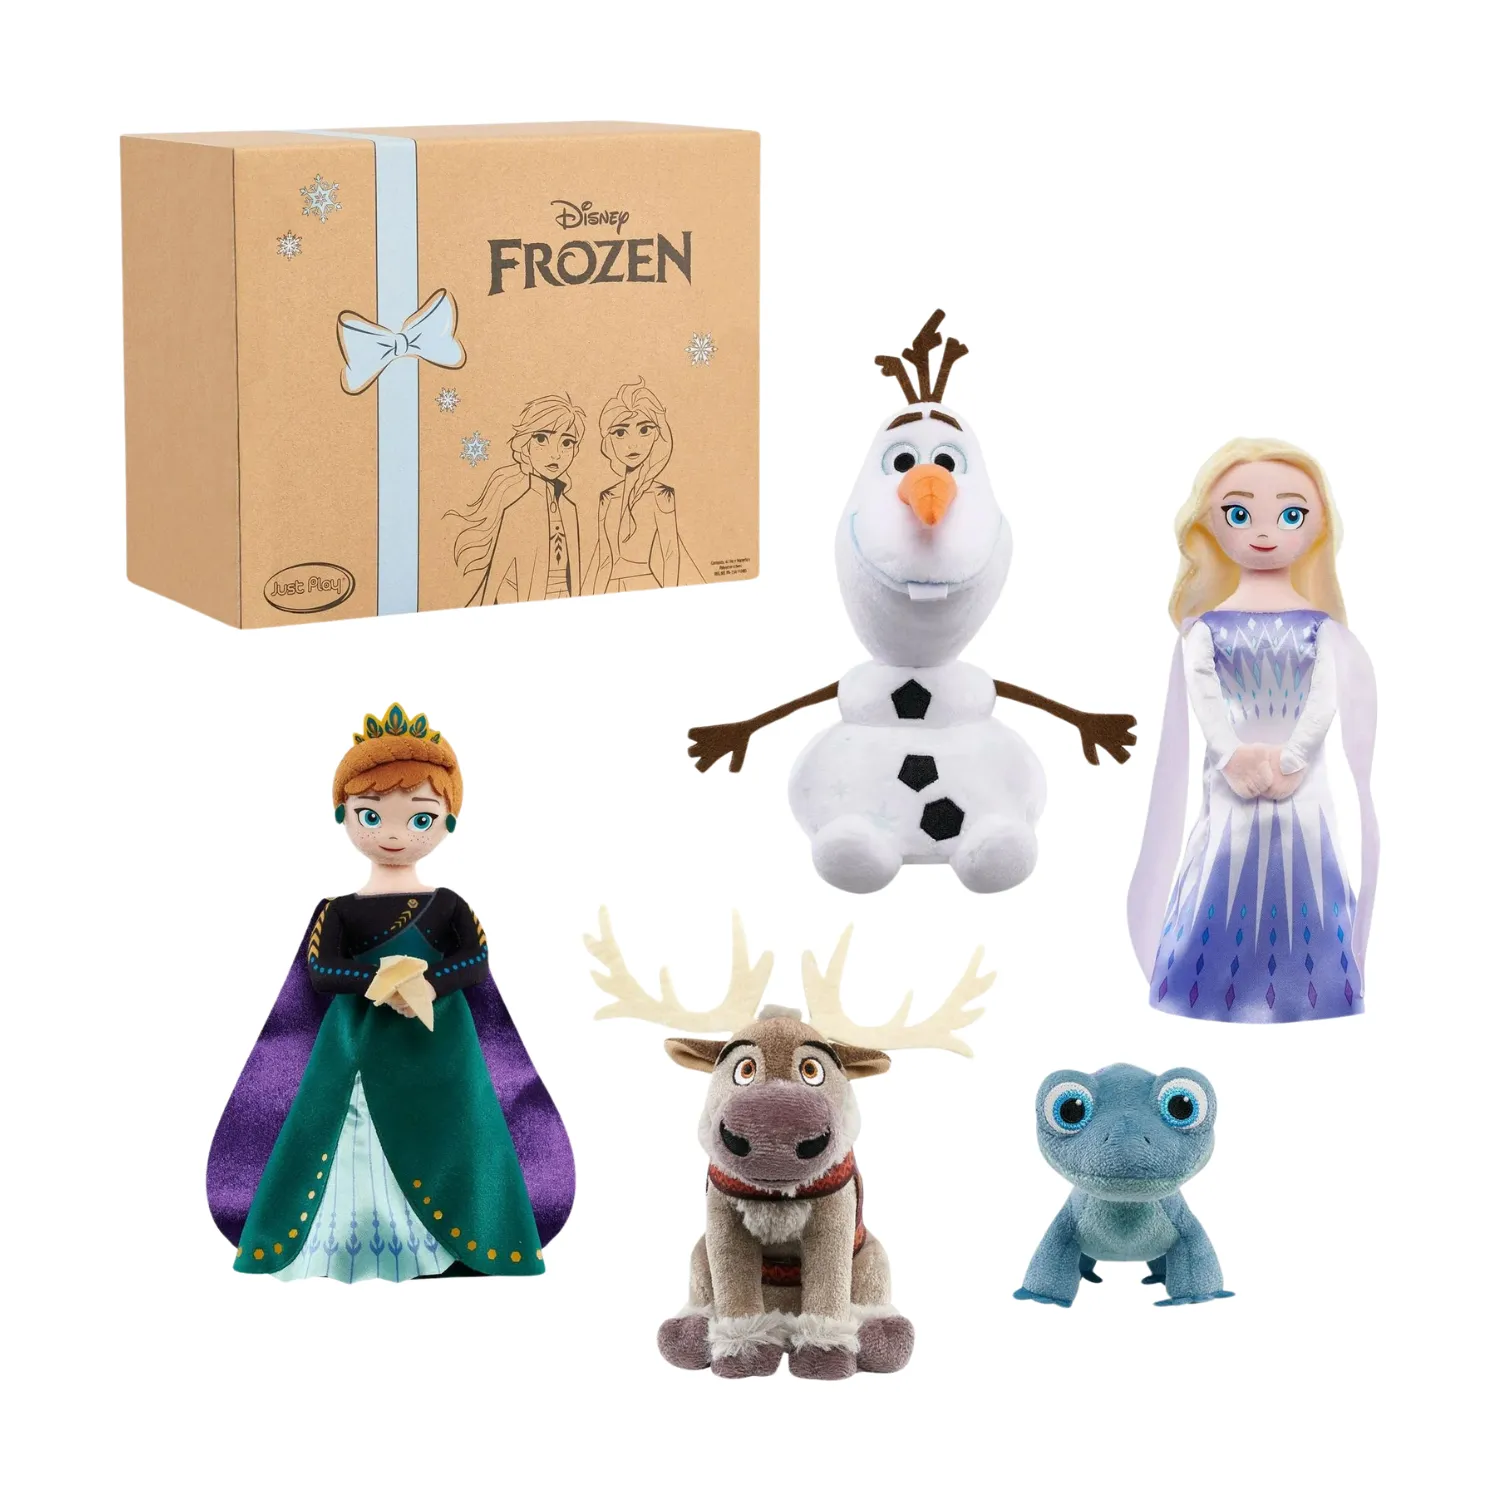 Questa immagine mostra cinque pupazzi di peluche dei personaggi di Frozen II, tra cui Anna, Elsa, Olaf, un lucertola e Sven.